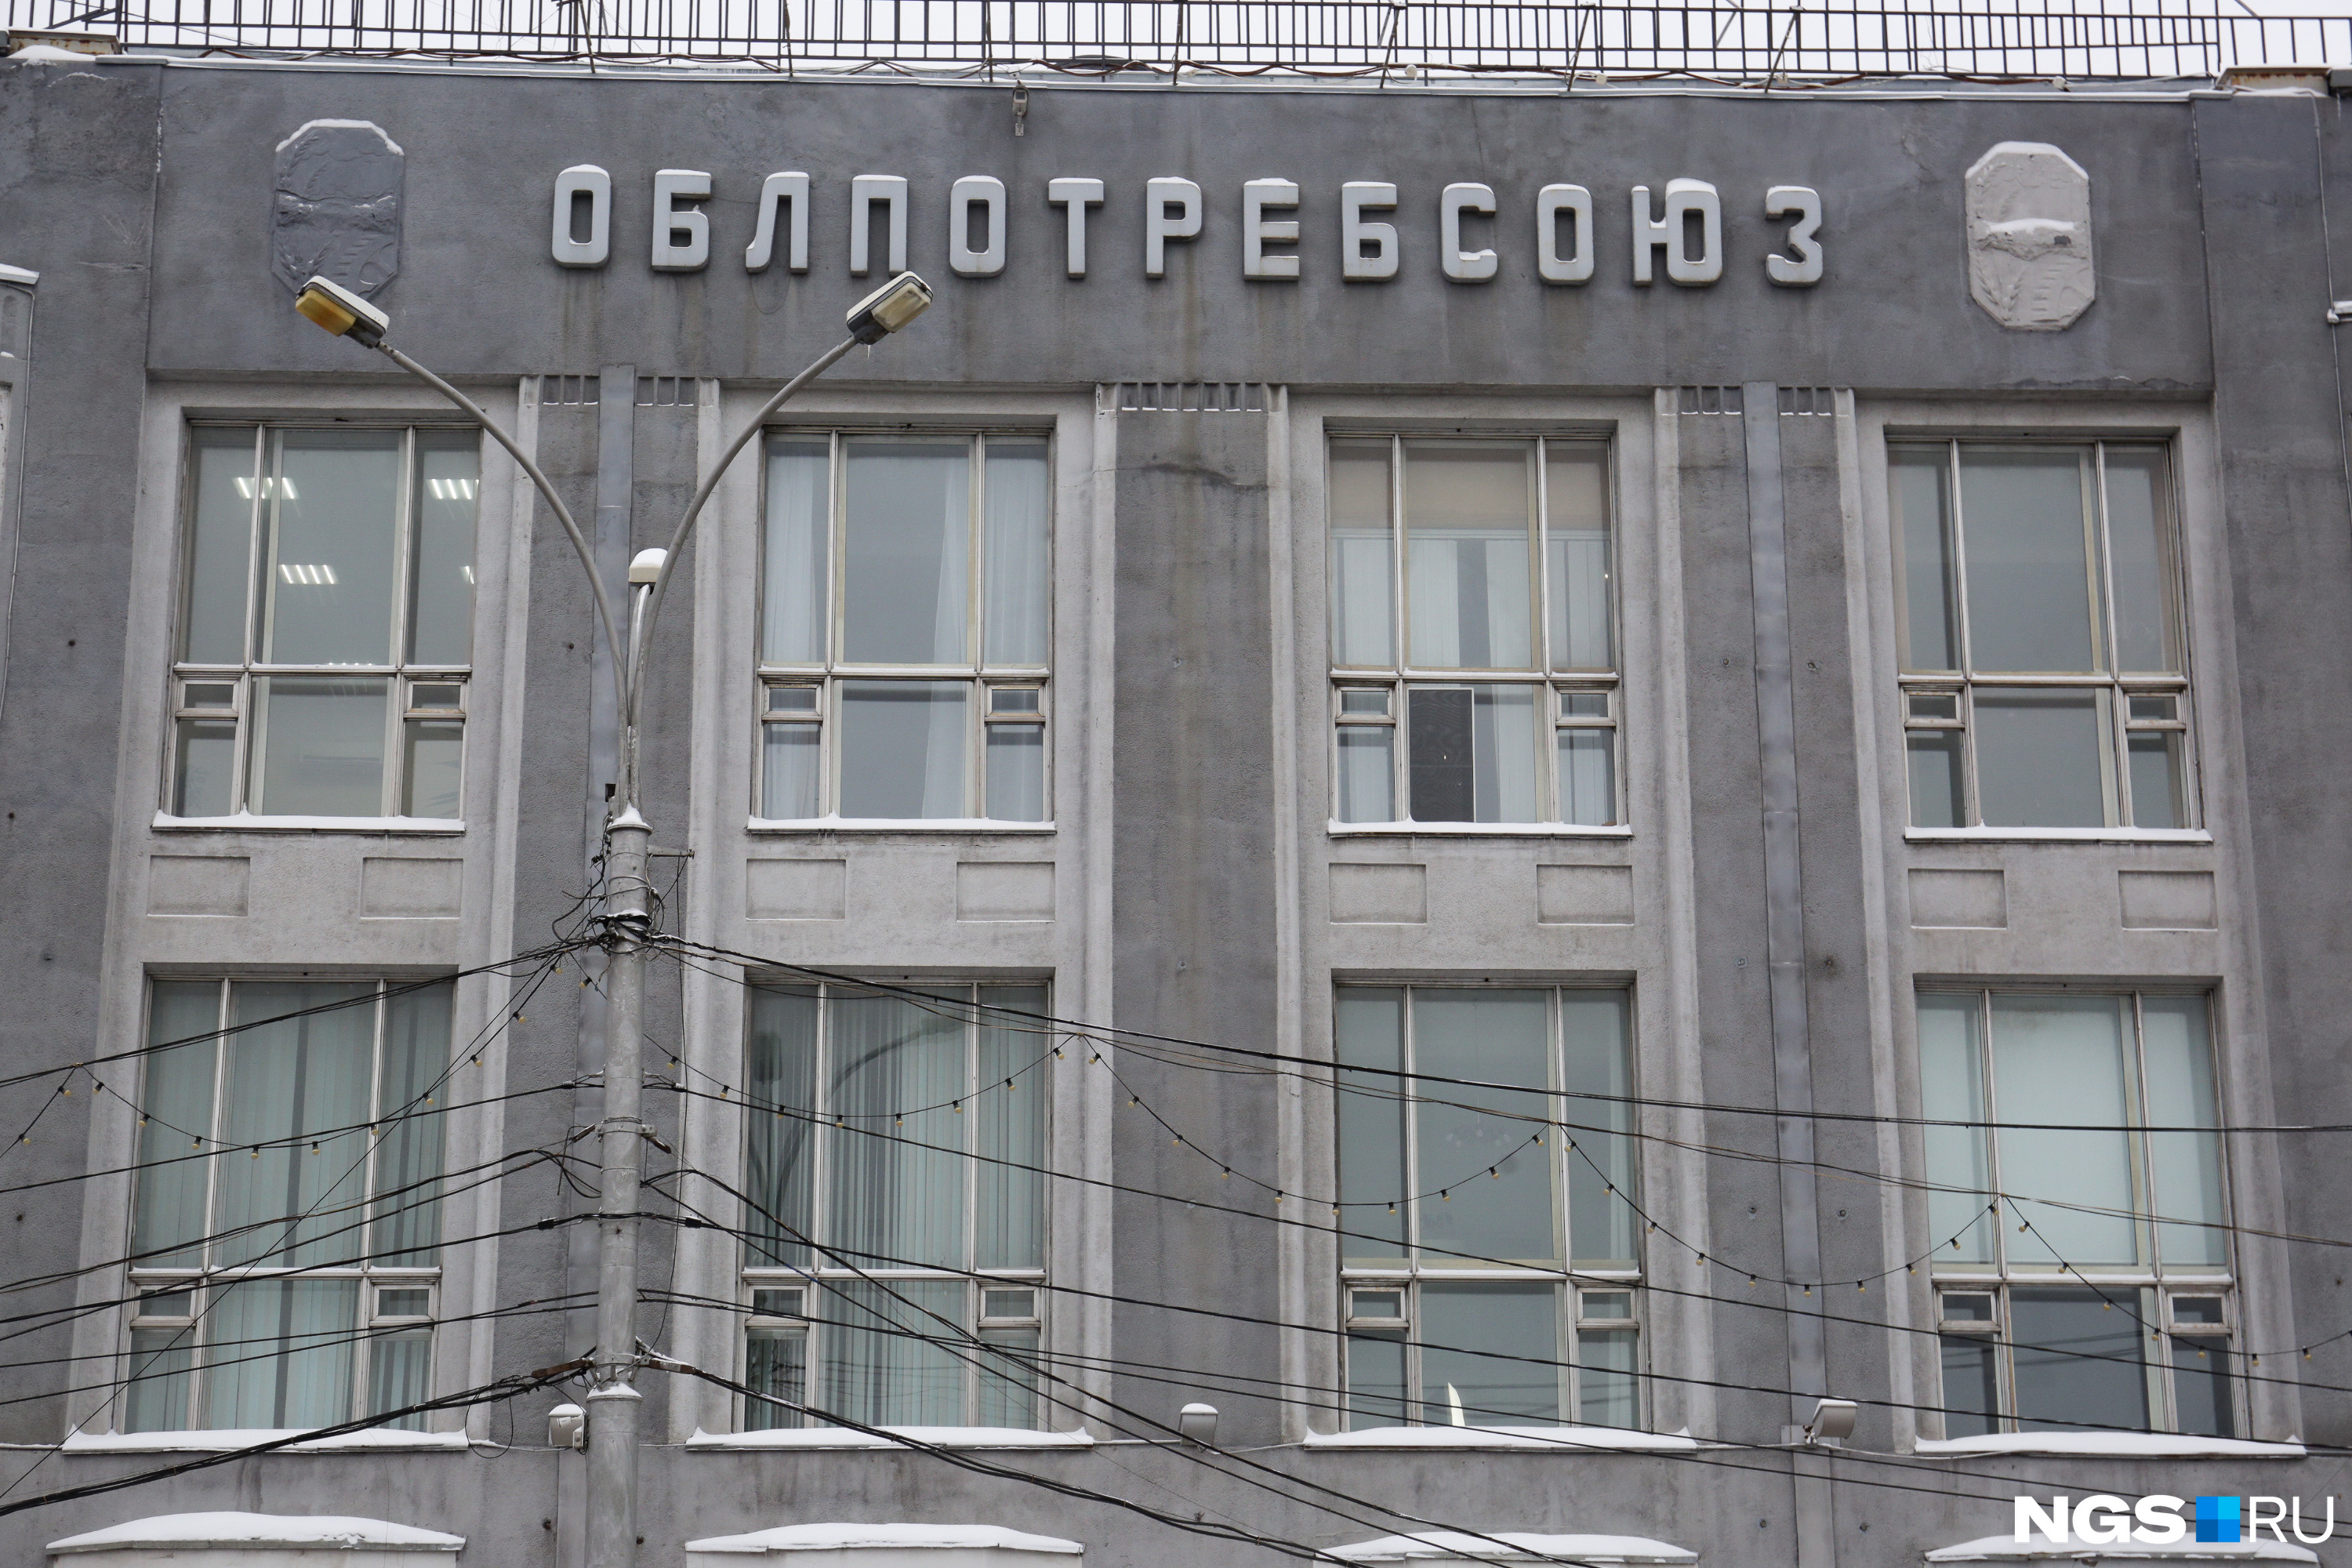 После переименования организации огромные буквы на фасаде сменили